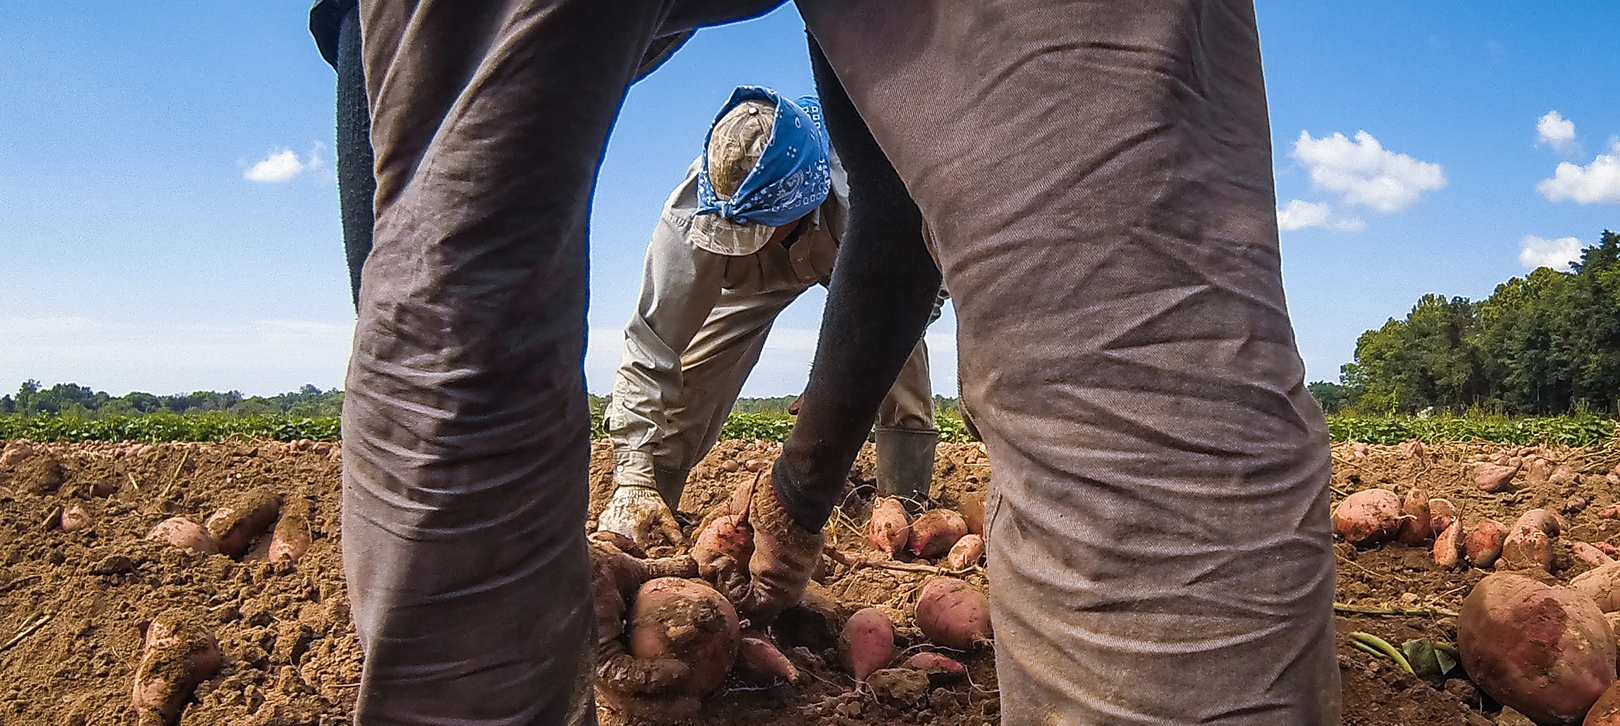 Dos trabajadores agrícolas cosechando camotes del suelo